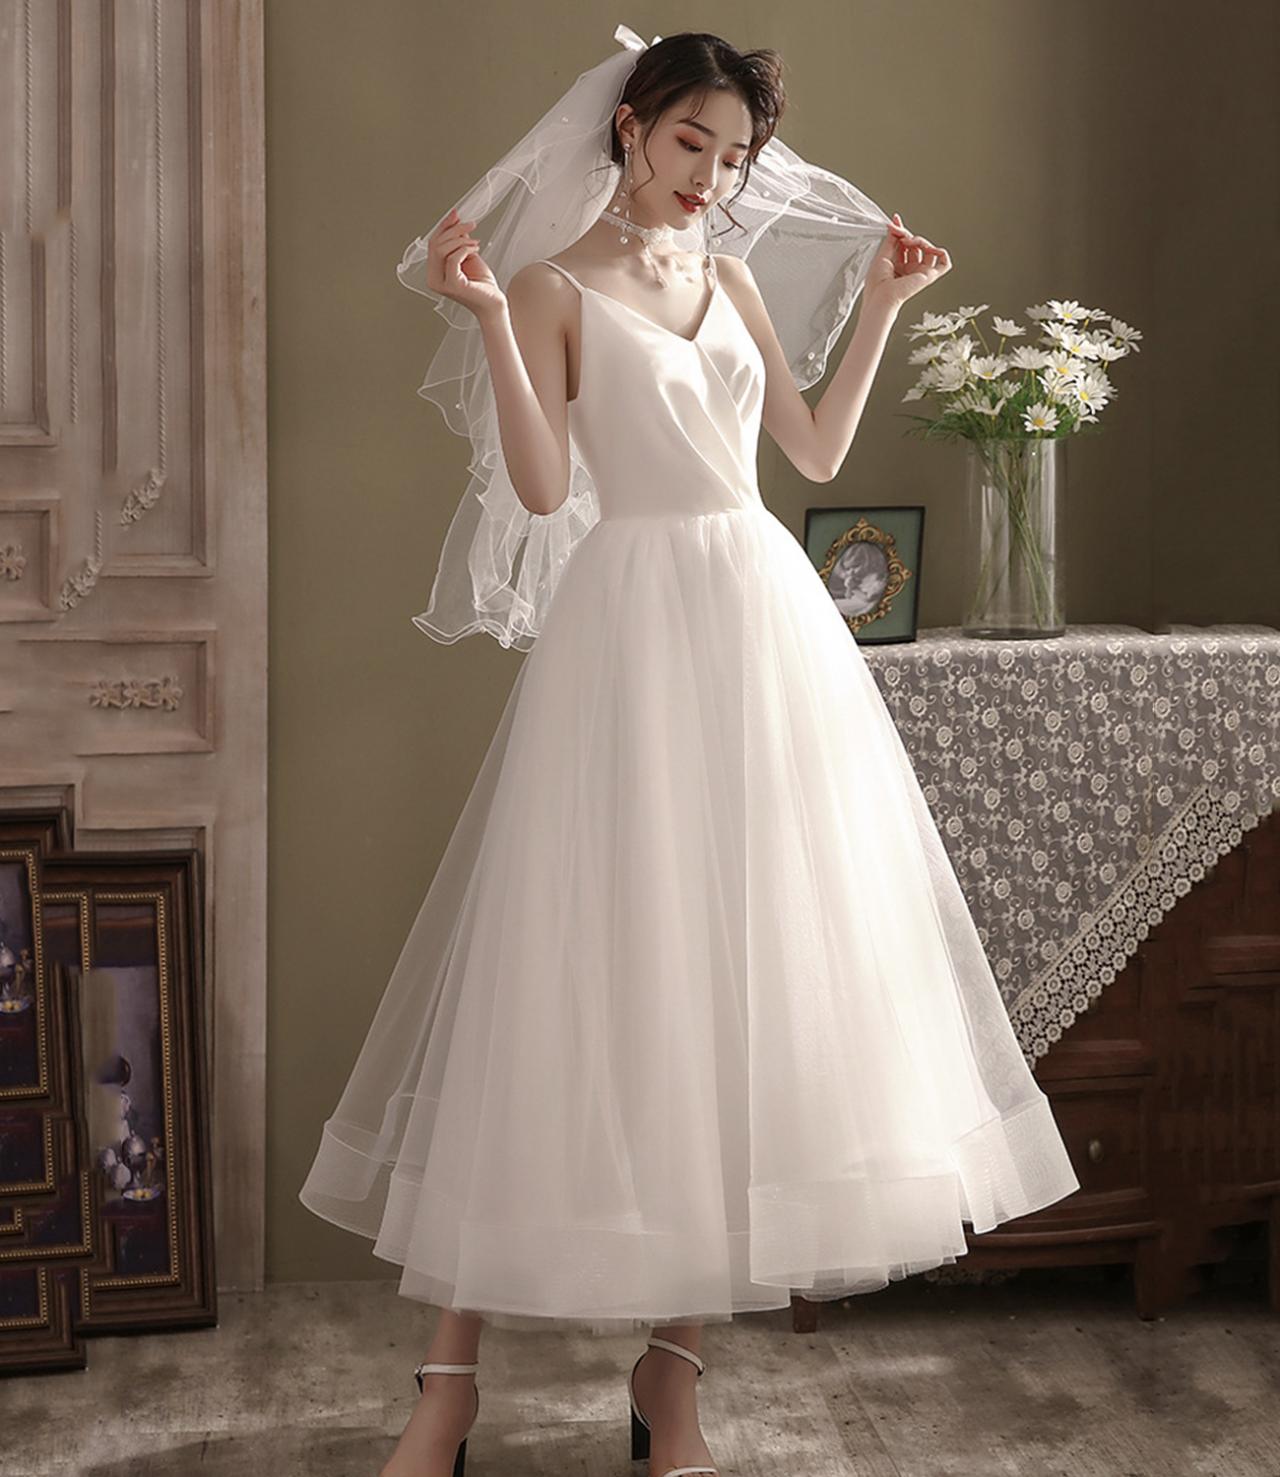 White Tulle Short Prom Dress White Homecoming Dress